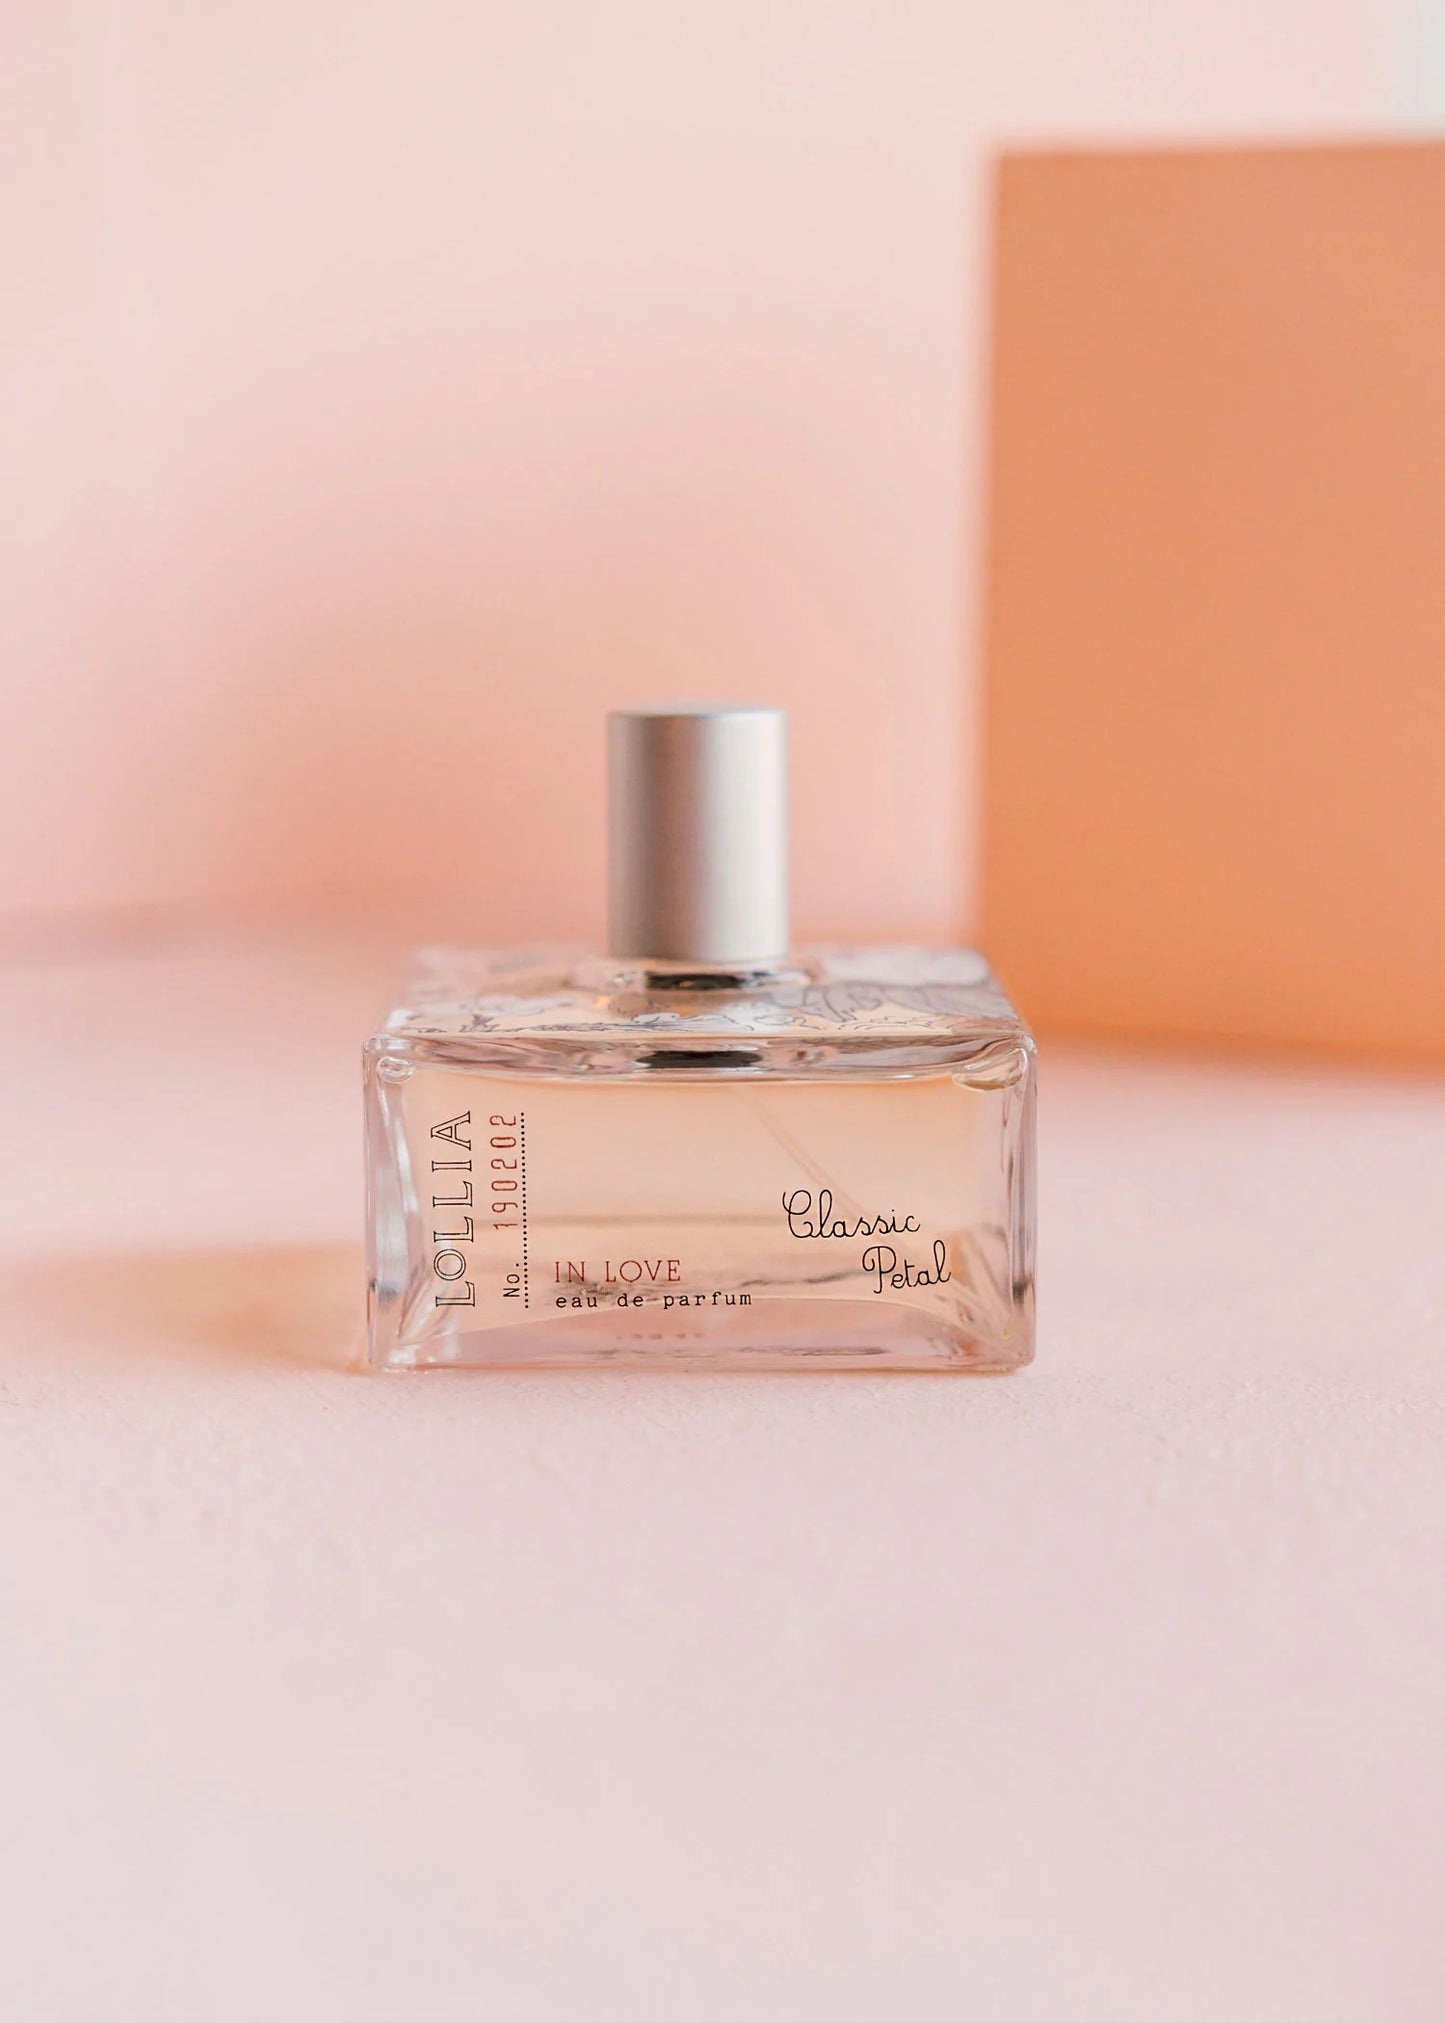 Lollia Luxe Perfume